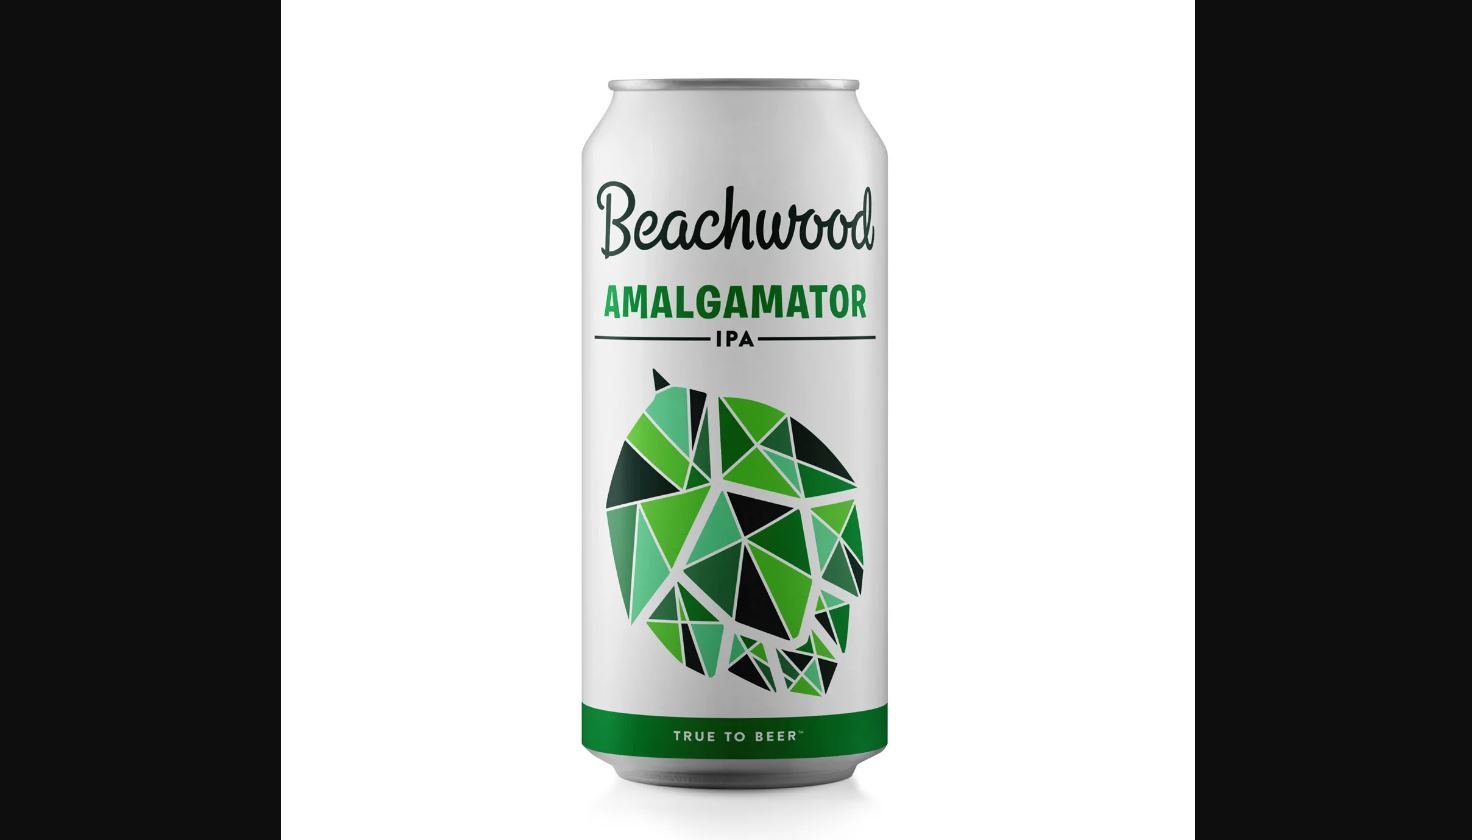 Beachwood Amalgamator